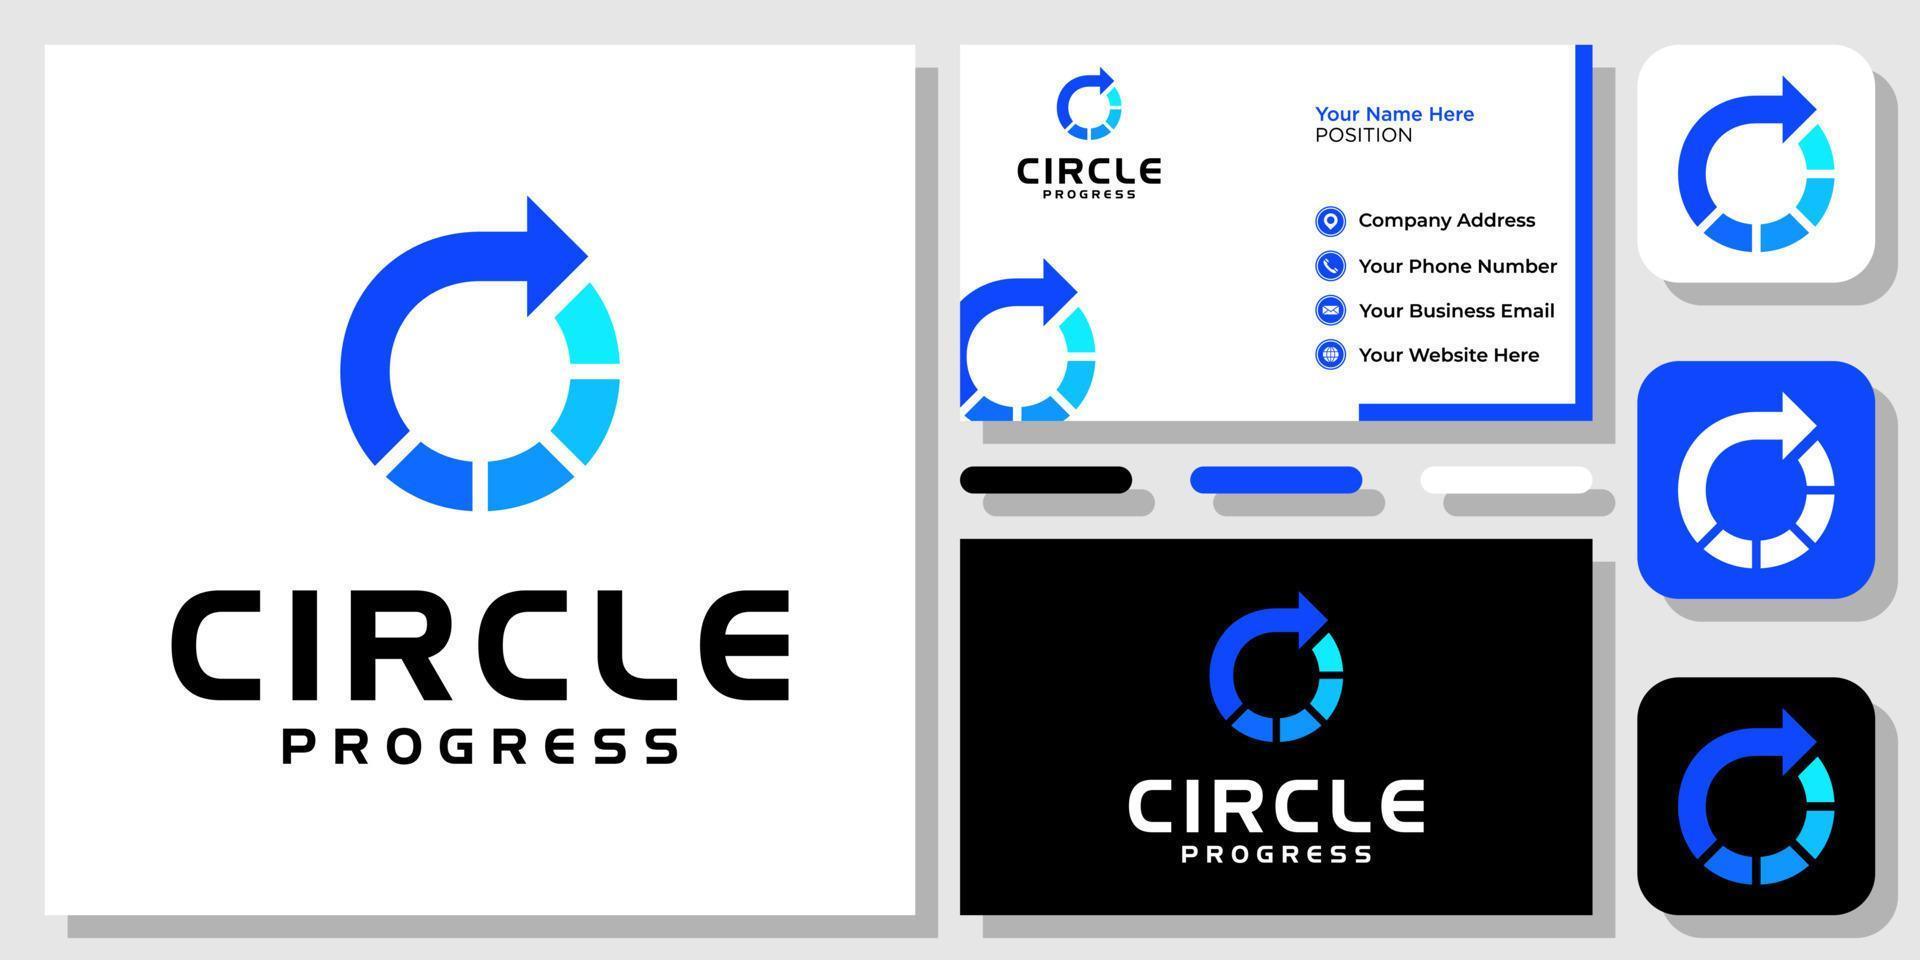 cirkel vooruitgang pijl succes groei gradiënt blauw modern logo ontwerp met sjabloon voor visitekaartjes vector